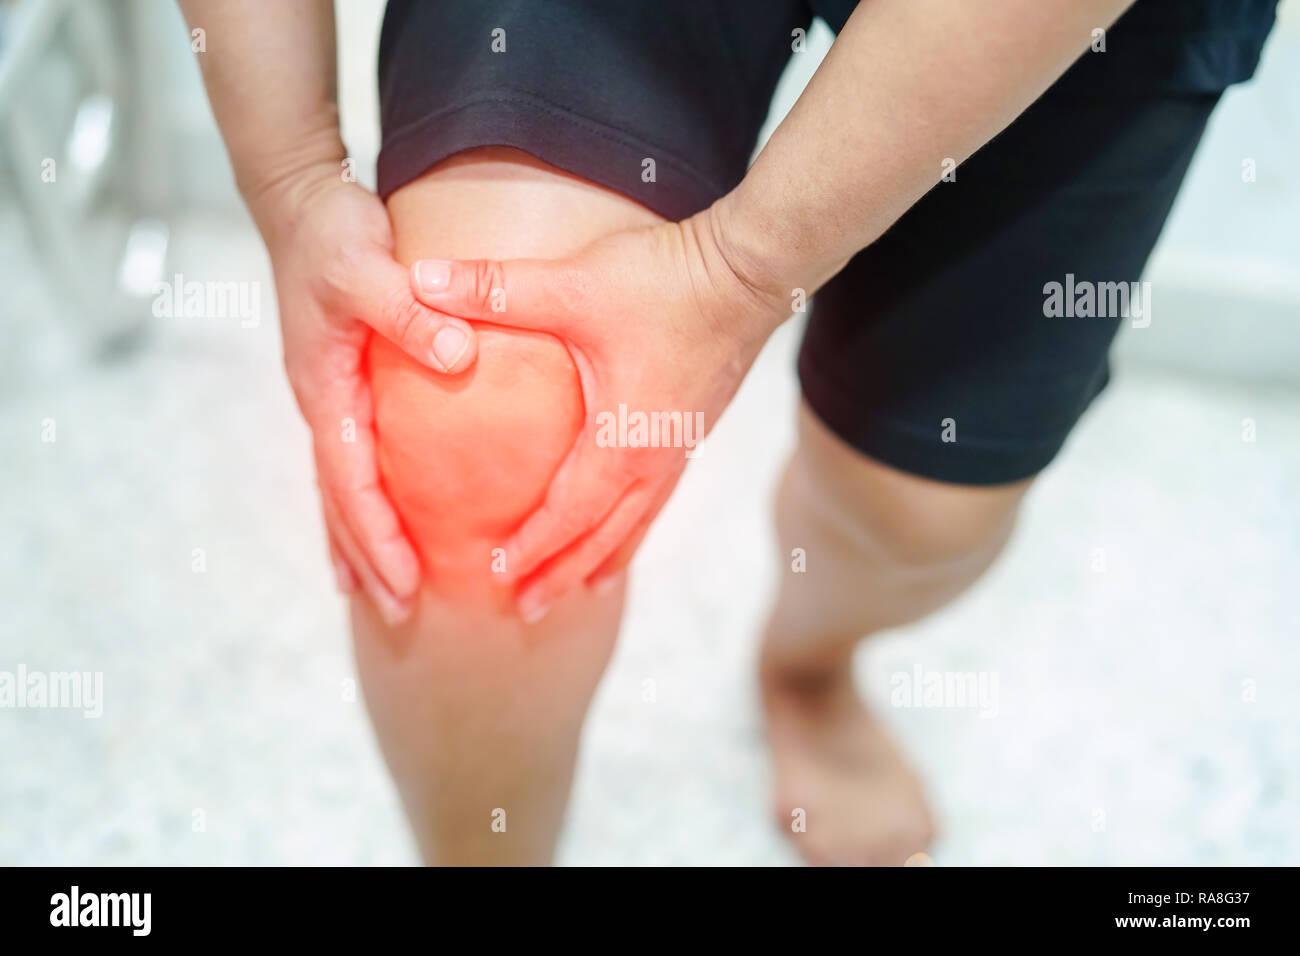 Asia dama de mediana edad paciente tocar y sentir el dolor de la rodilla : concepto médico sano. Foto de stock